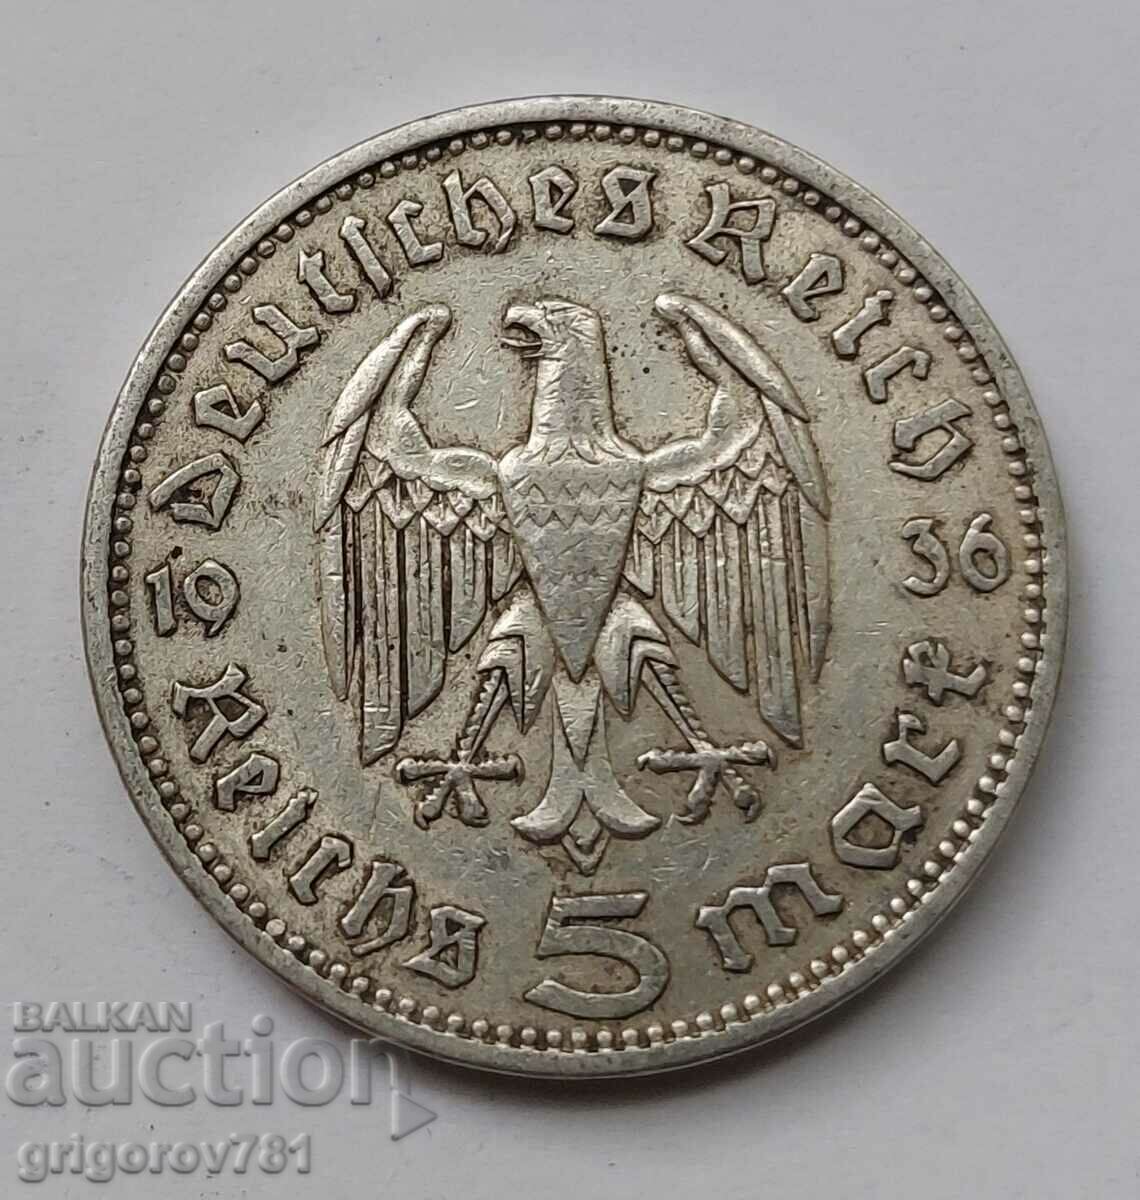 5 Mark Silver Γερμανία 1936 A III Reich Silver Coin #42